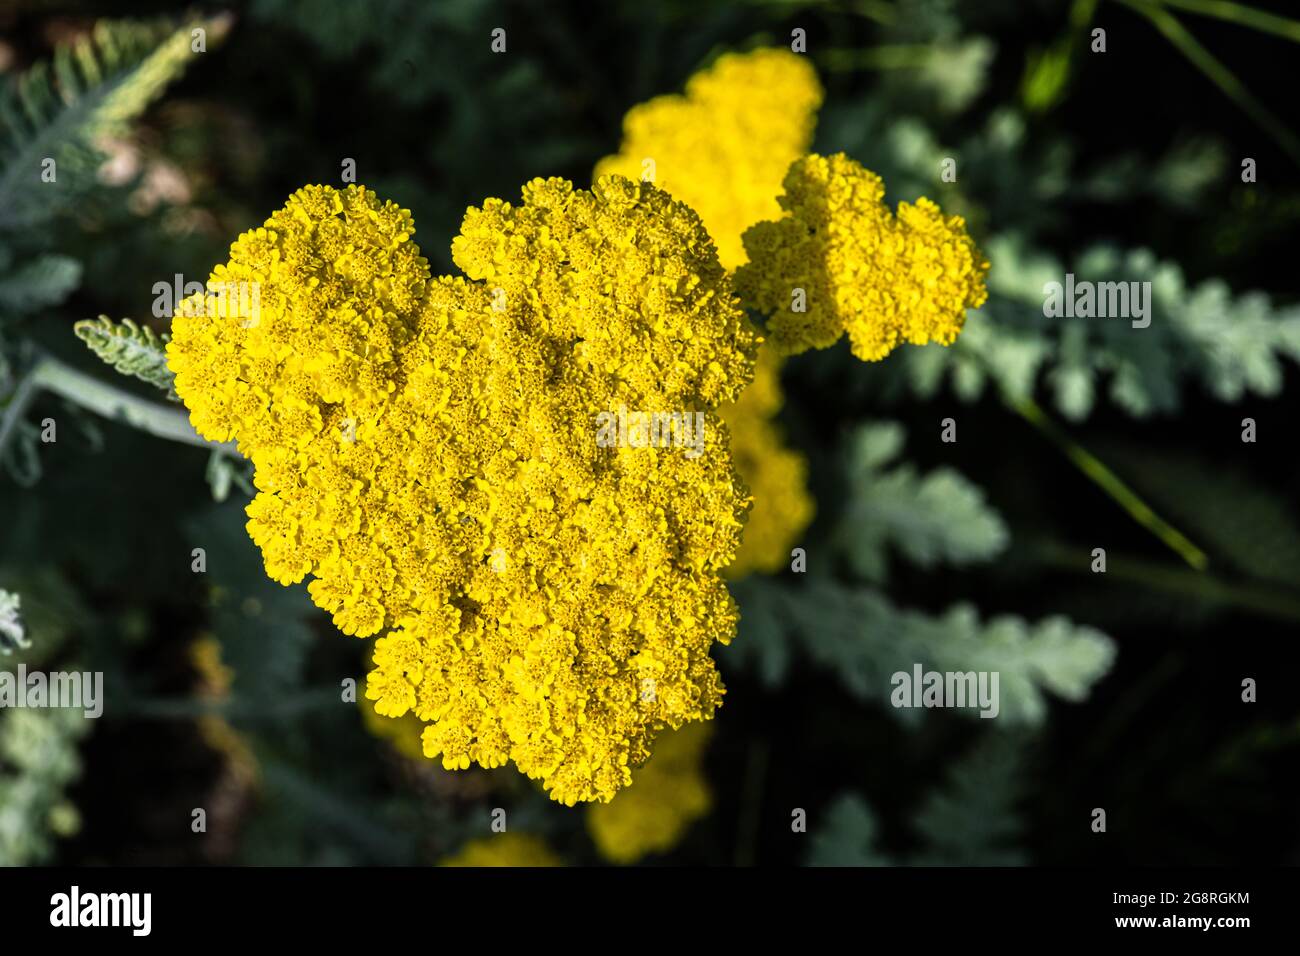 Flowers of Moonshine Yarrow (Achillea clypeolata ‘Moonshine’) Stock Photo